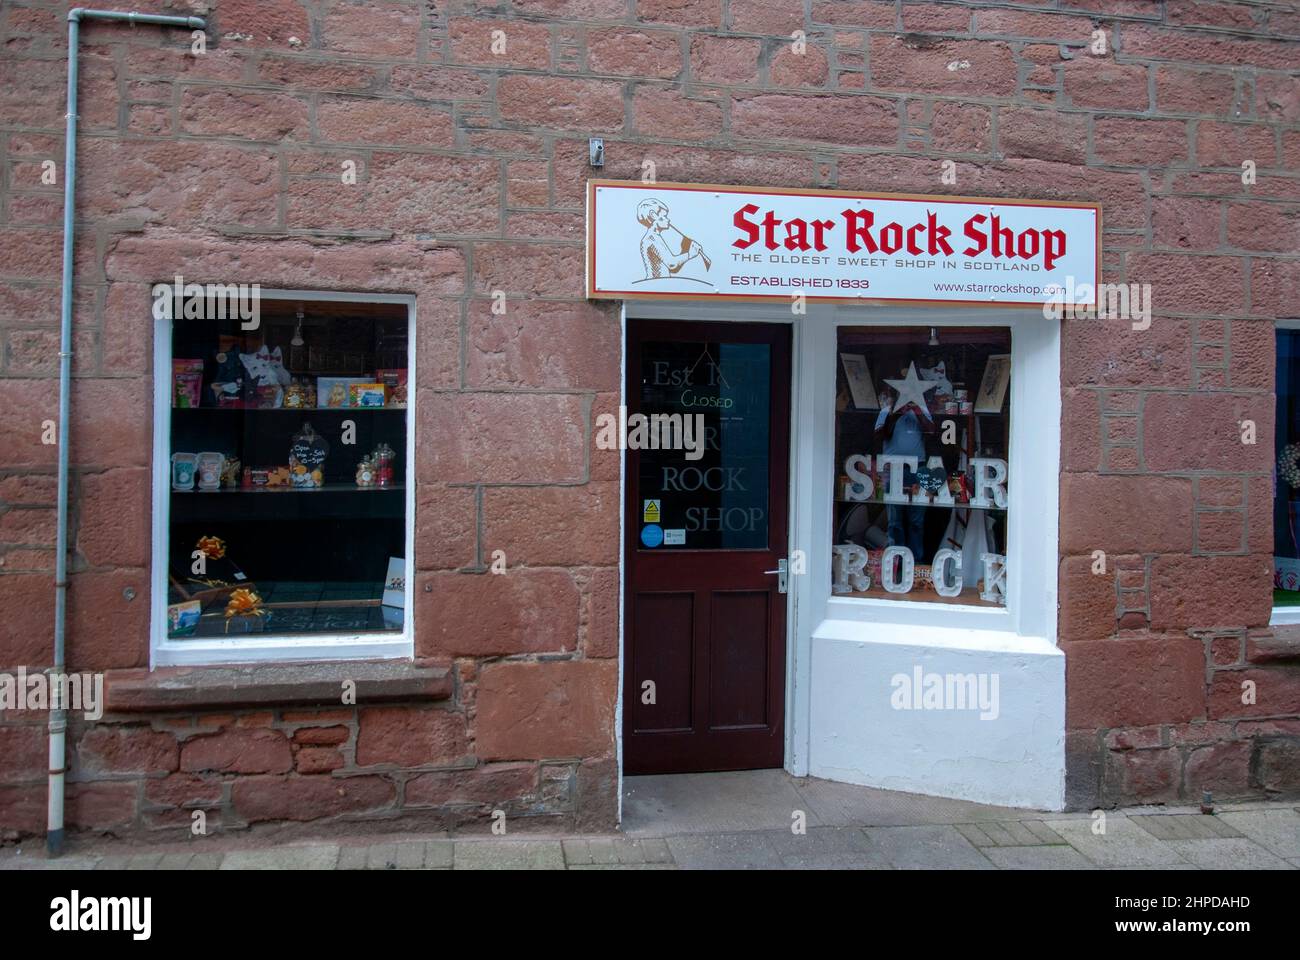 Star Rock Shop Oldest Sweet Shop in Scotland Roods Kirriemuir Angus Scotland Vereinigtes Königreich Außenansicht roter Sandstein doppelt fronted Commercial reta Stockfoto